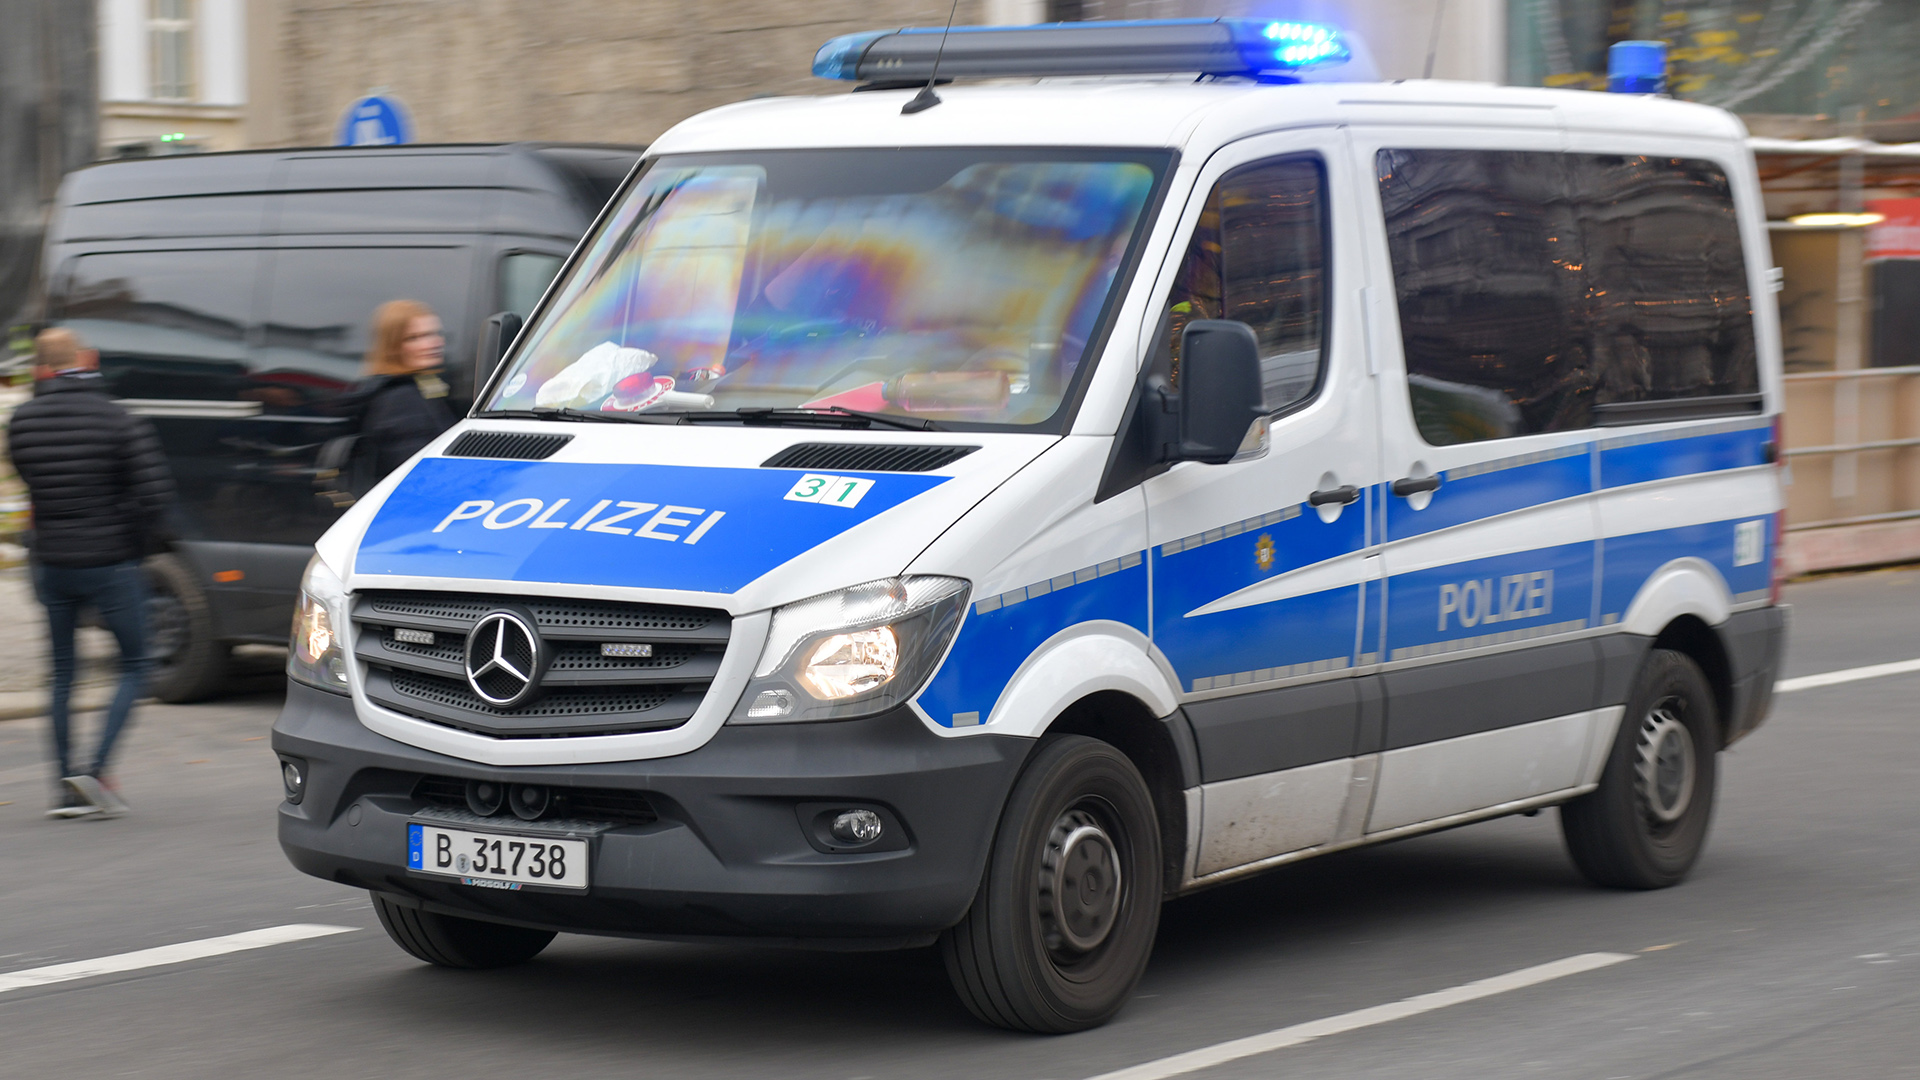 Symbolbild: Ein Polizeifahrzeug am 18. November 2020 in Berlin. (Quelle: Picture Alliance/Fotostand/Reuhl)